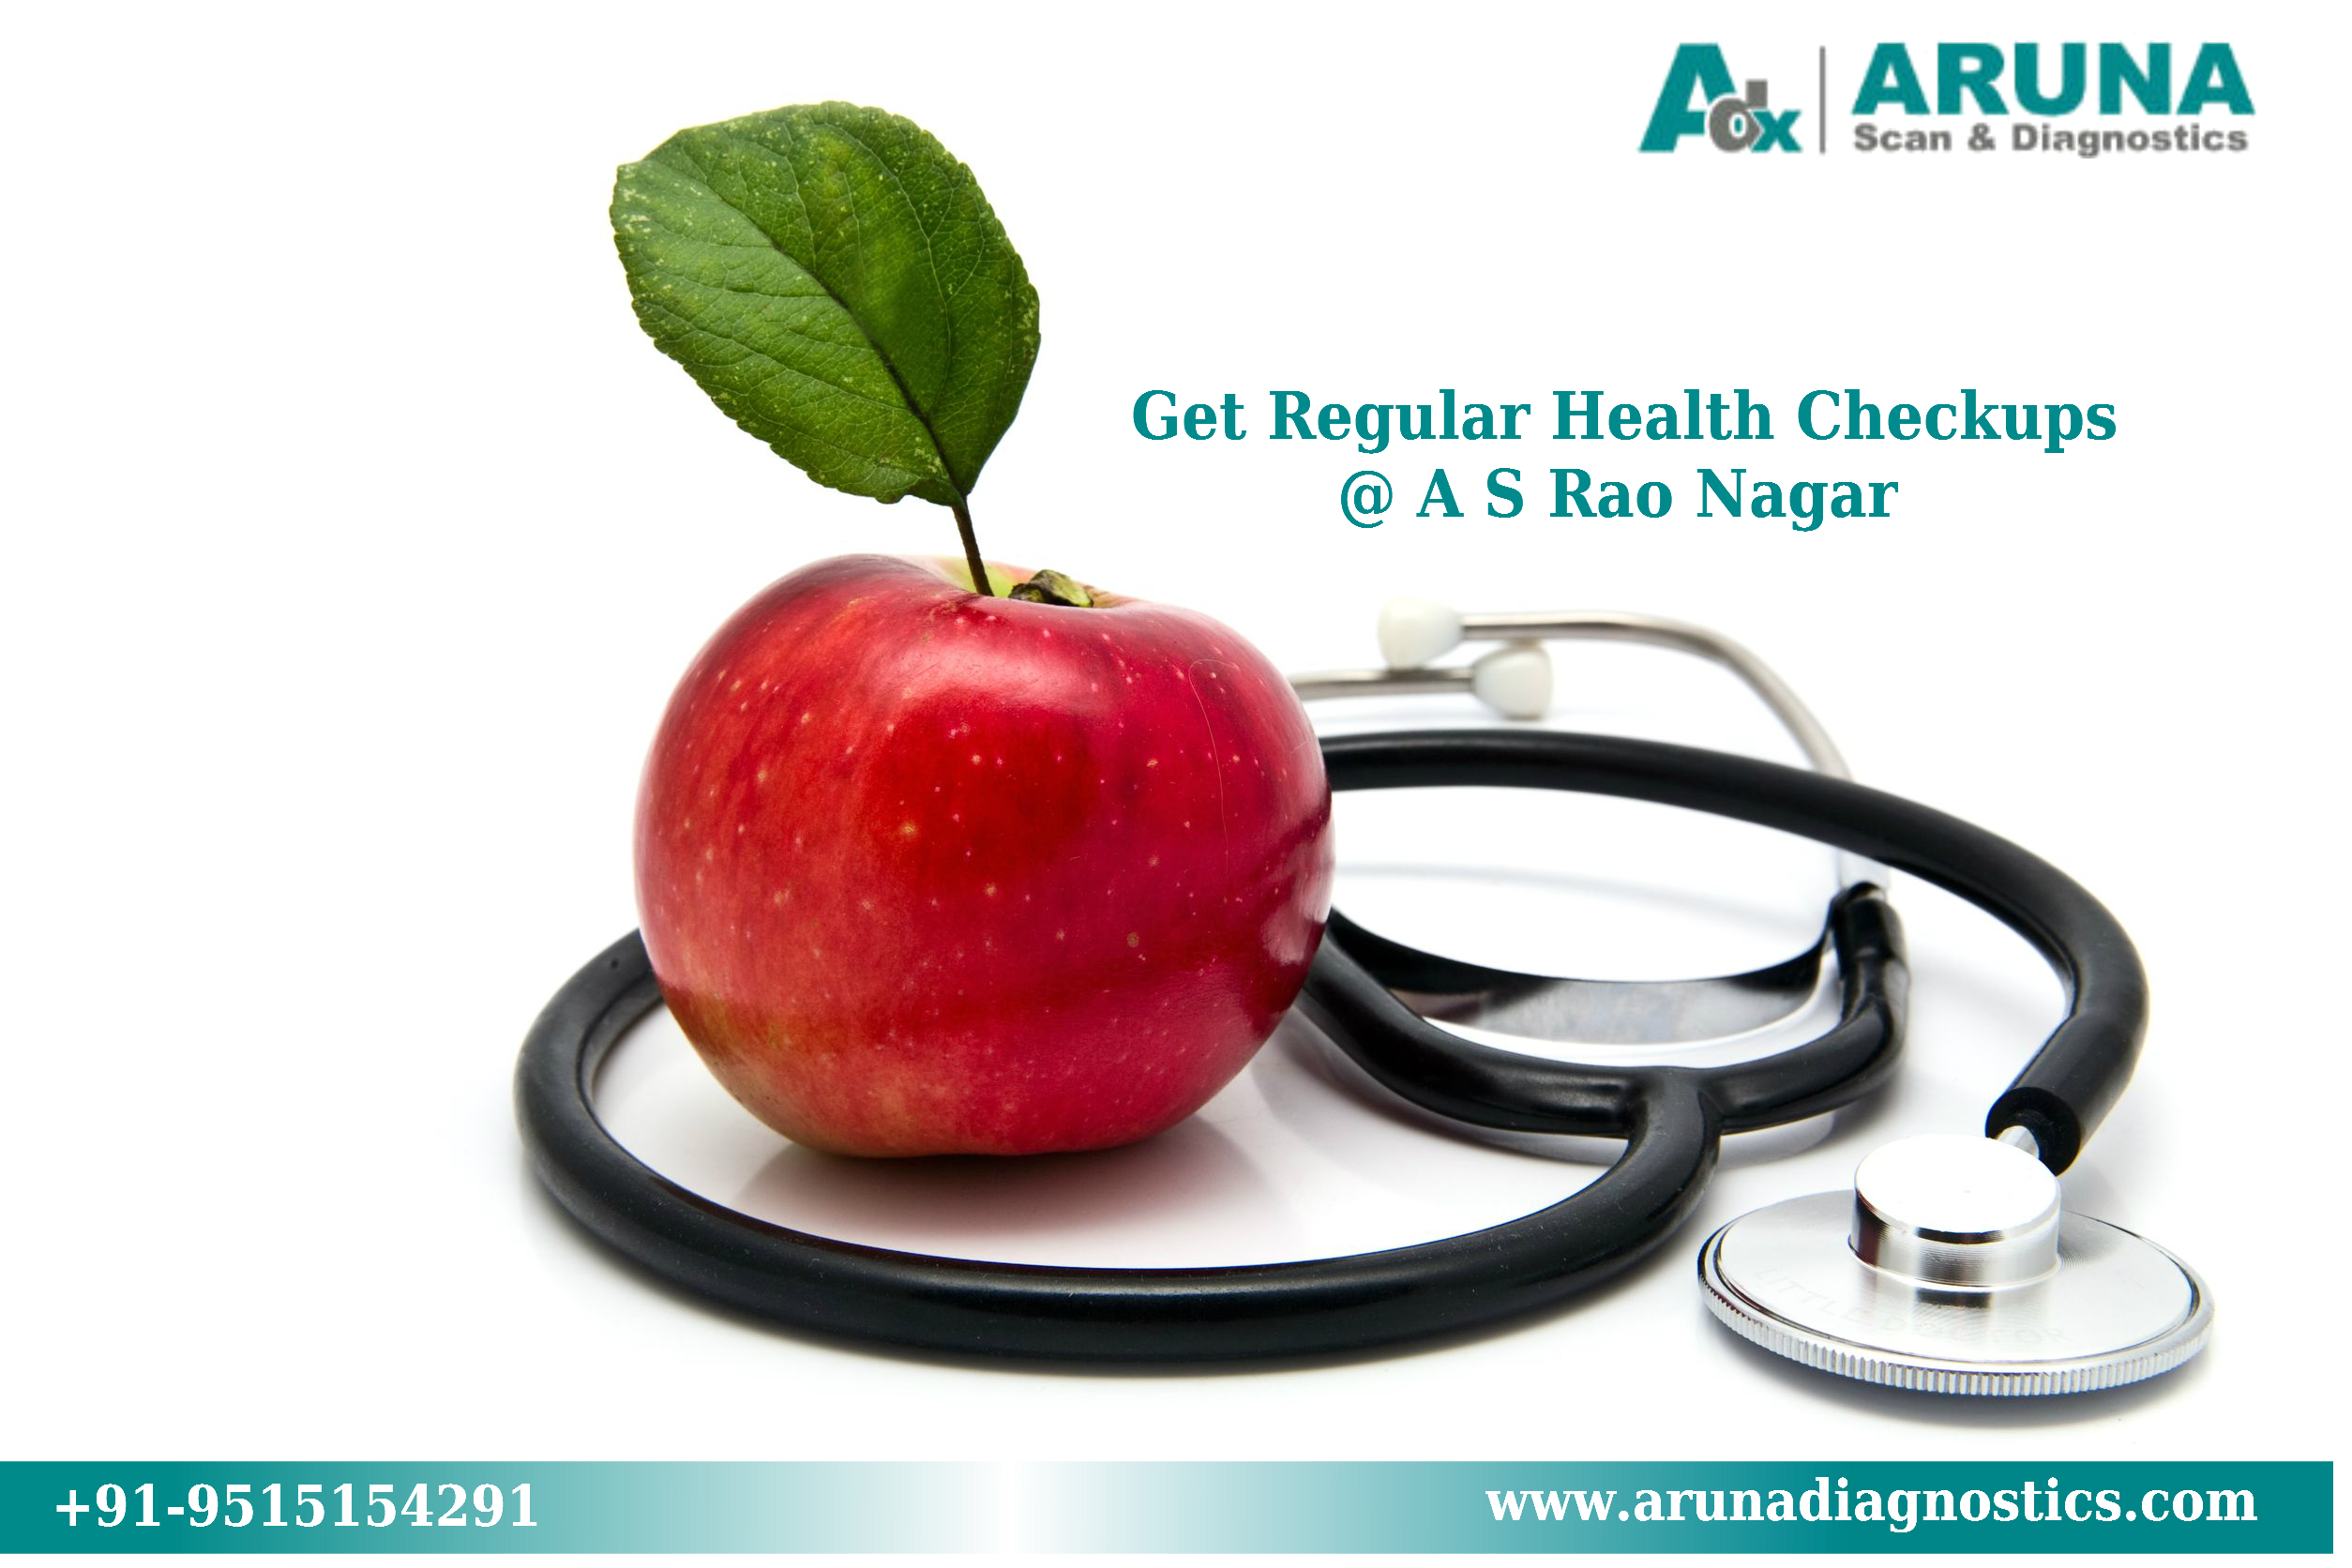 Health Check ups at Aruna Scan & Diagnostics